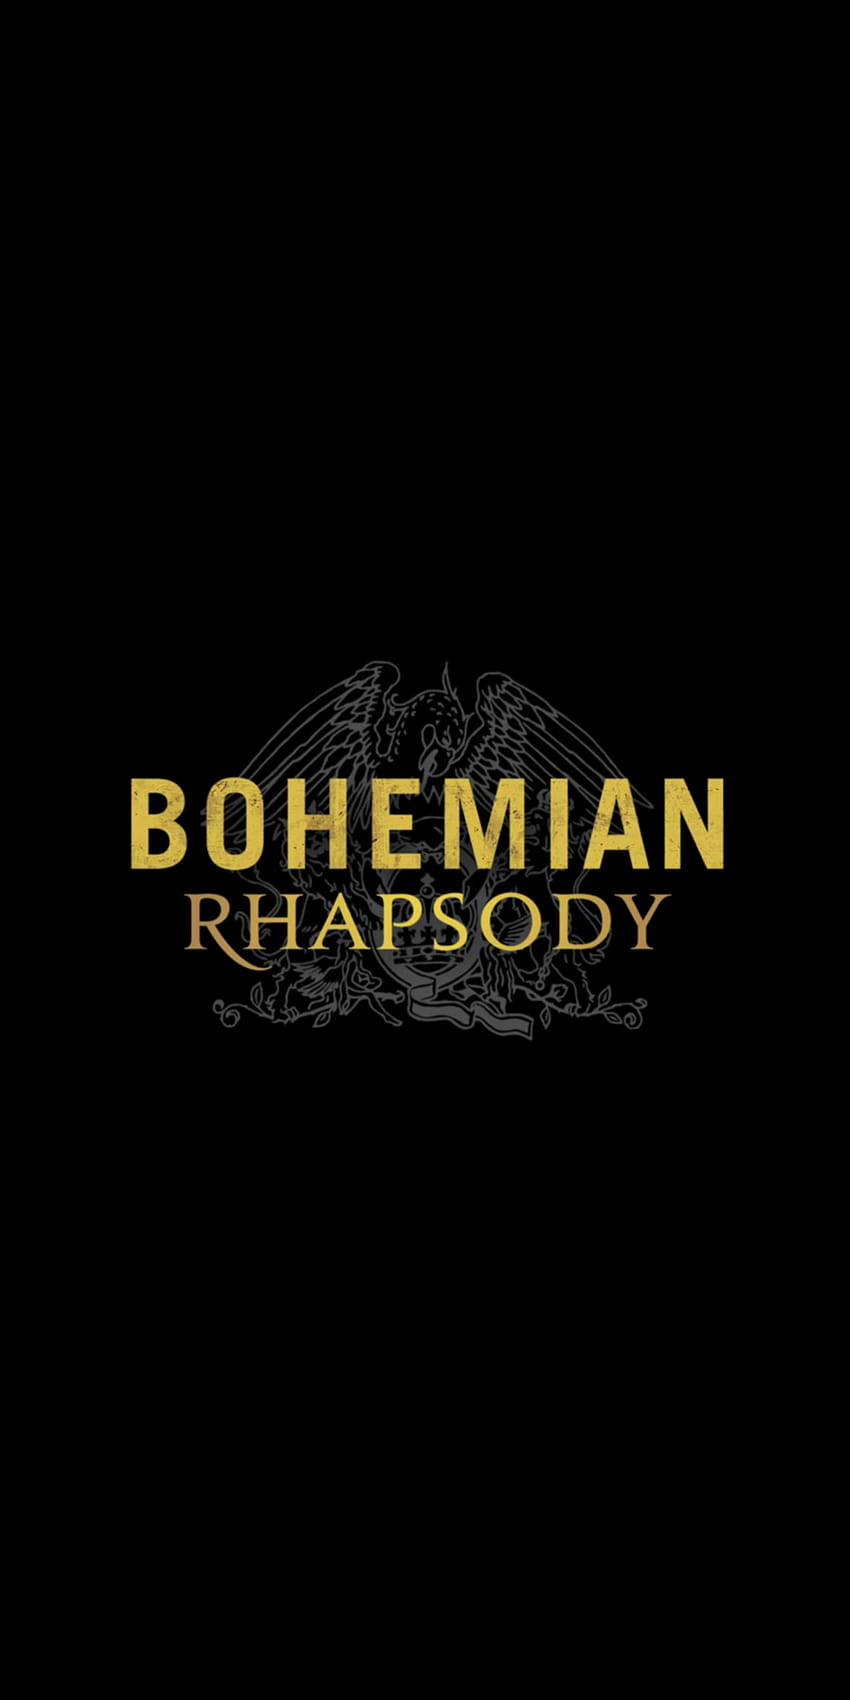 Bohemian Rhapsody [1440x2880] : Latar belakang AMOLED, ratu bohemian rhapsody wallpaper ponsel HD